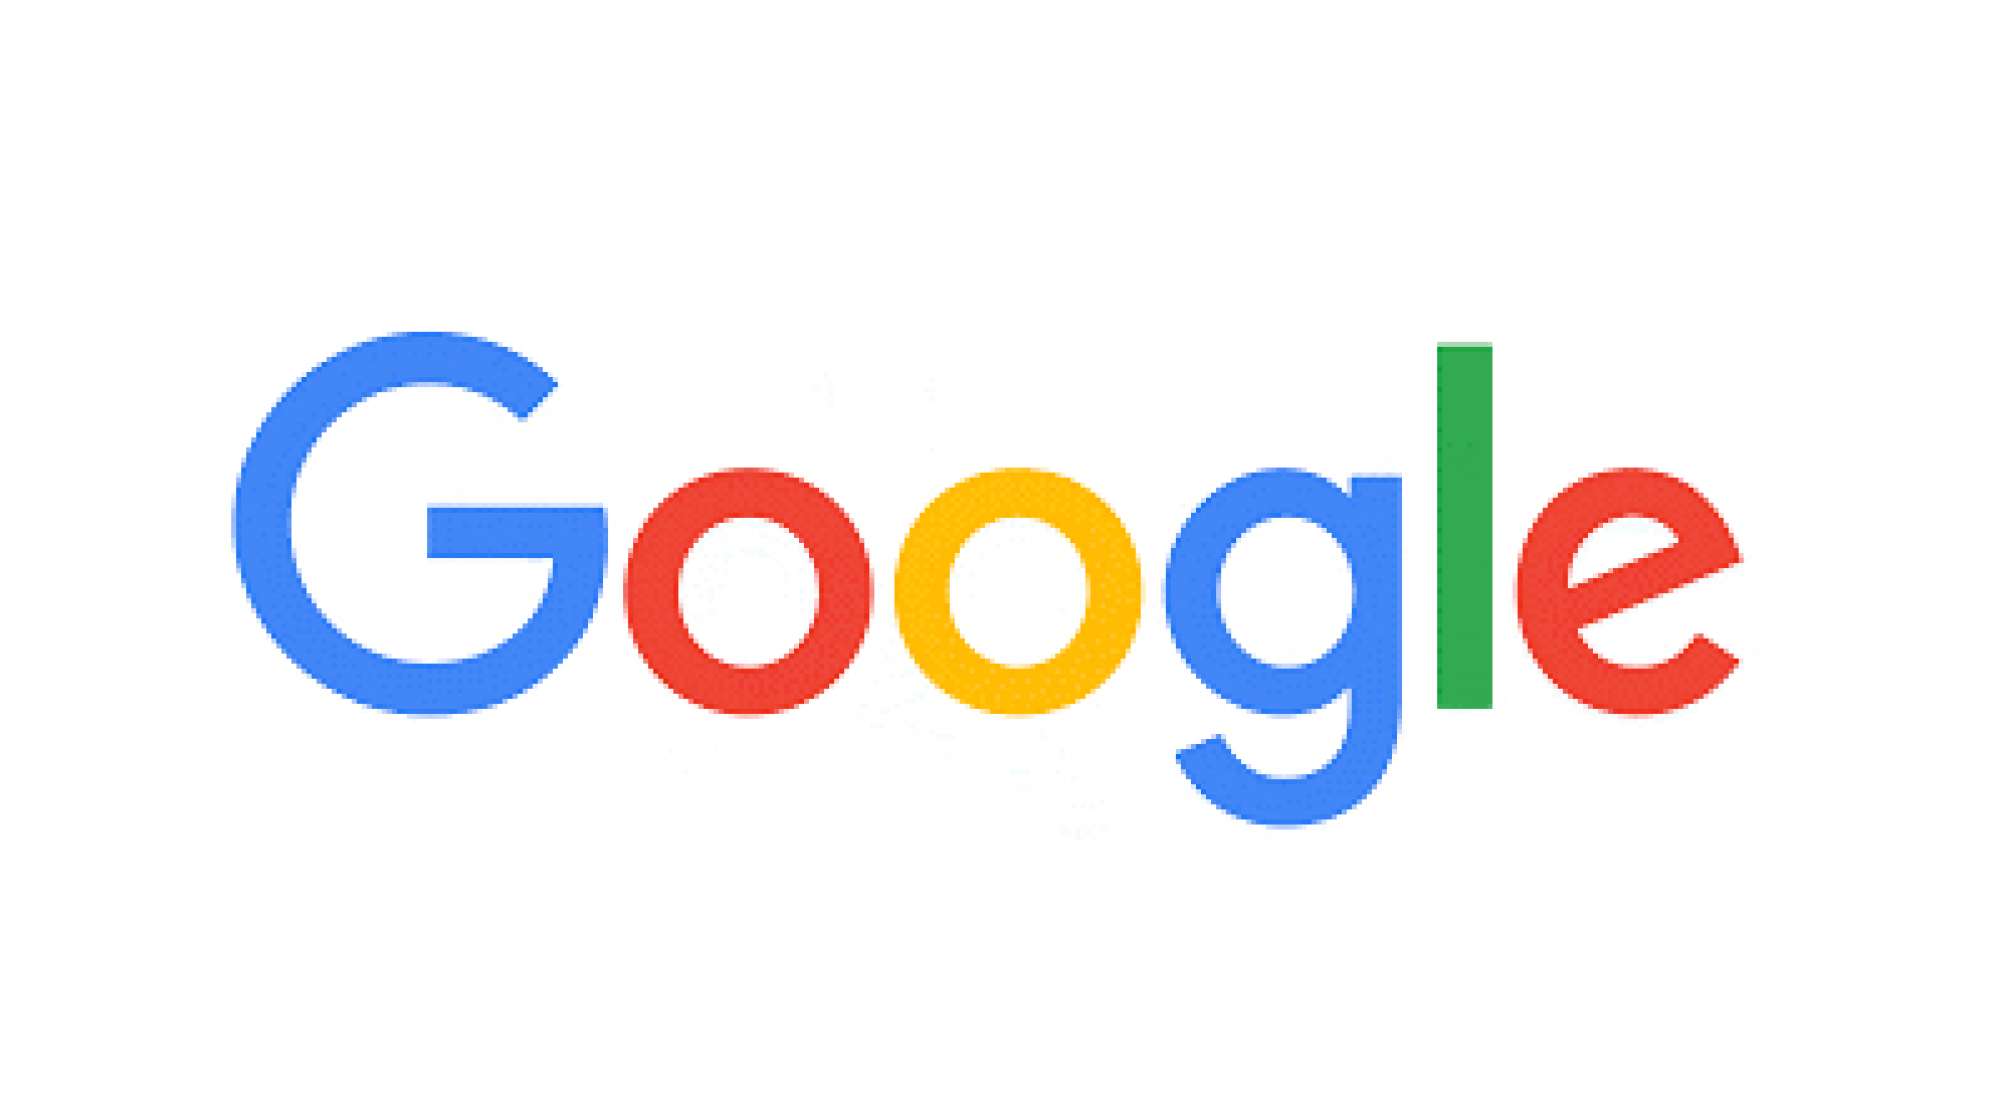 Google: Saiba como conseguir seu emprego